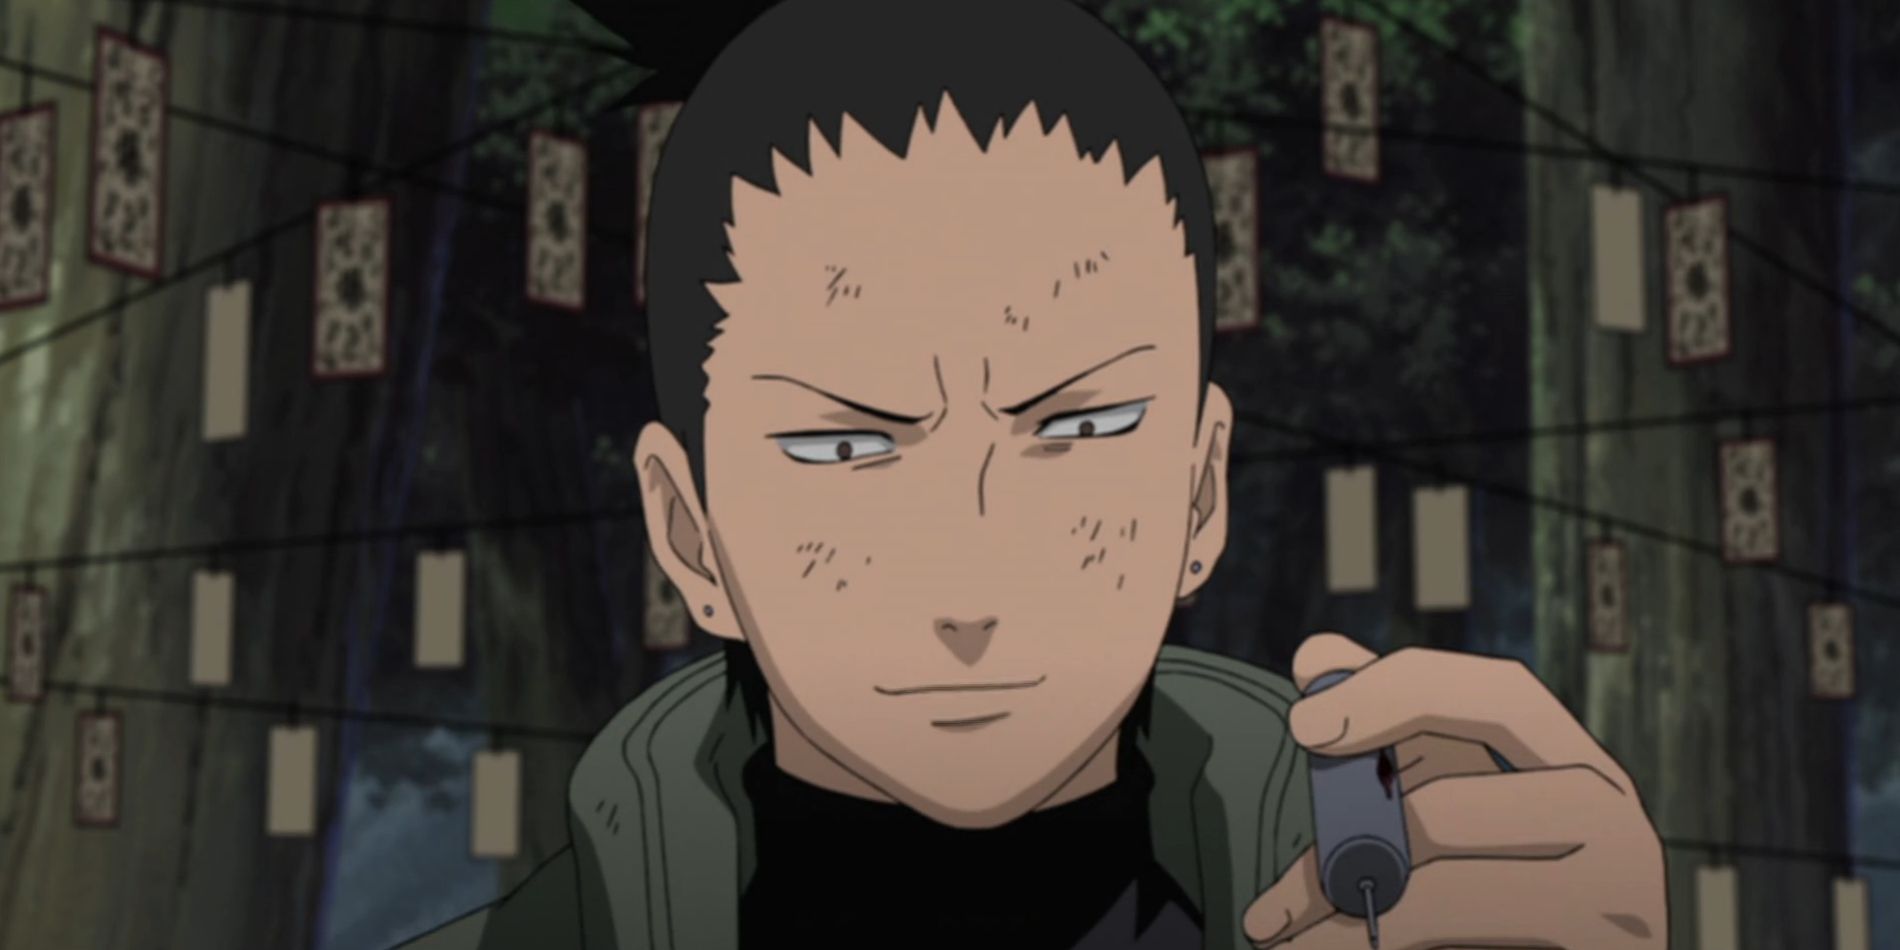 Captura de tela do anime Naruto Shippuden mostra Shikamaru na floresta segurando um frasco de sangue de seu inimigo imortal com etiquetas explosivas penduradas atrás dele.